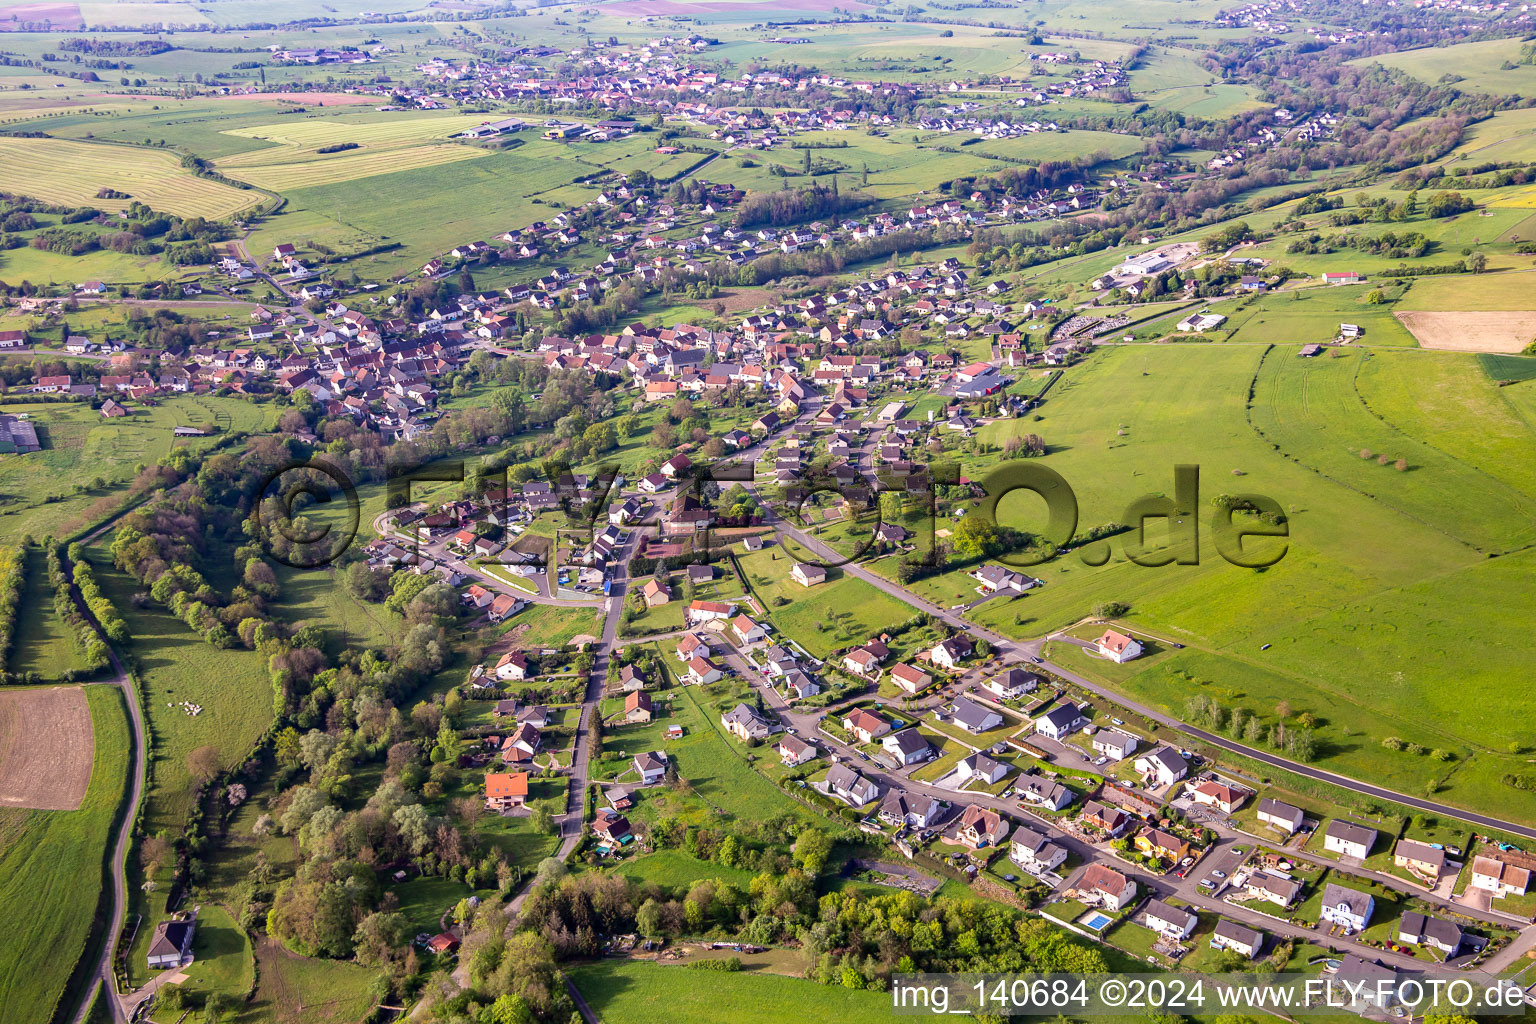 Vue aérienne de Achen dans le département Moselle, France